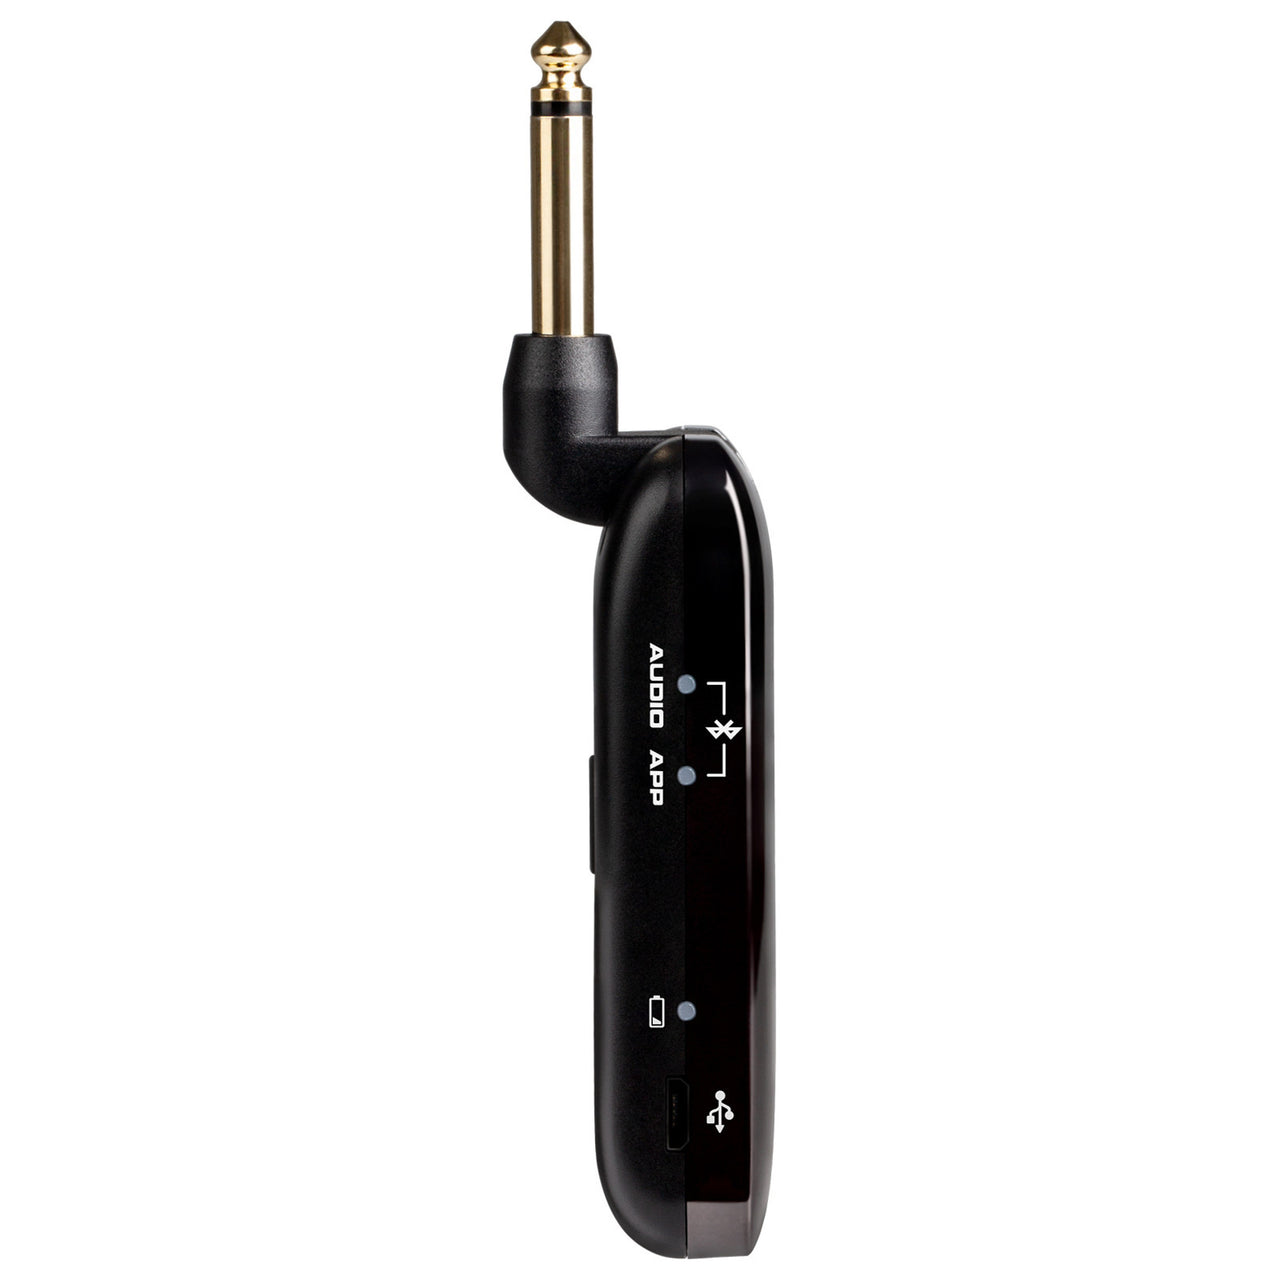 Amplificador Nux Mighty Plug MP-2 para Guitarra y Bajo